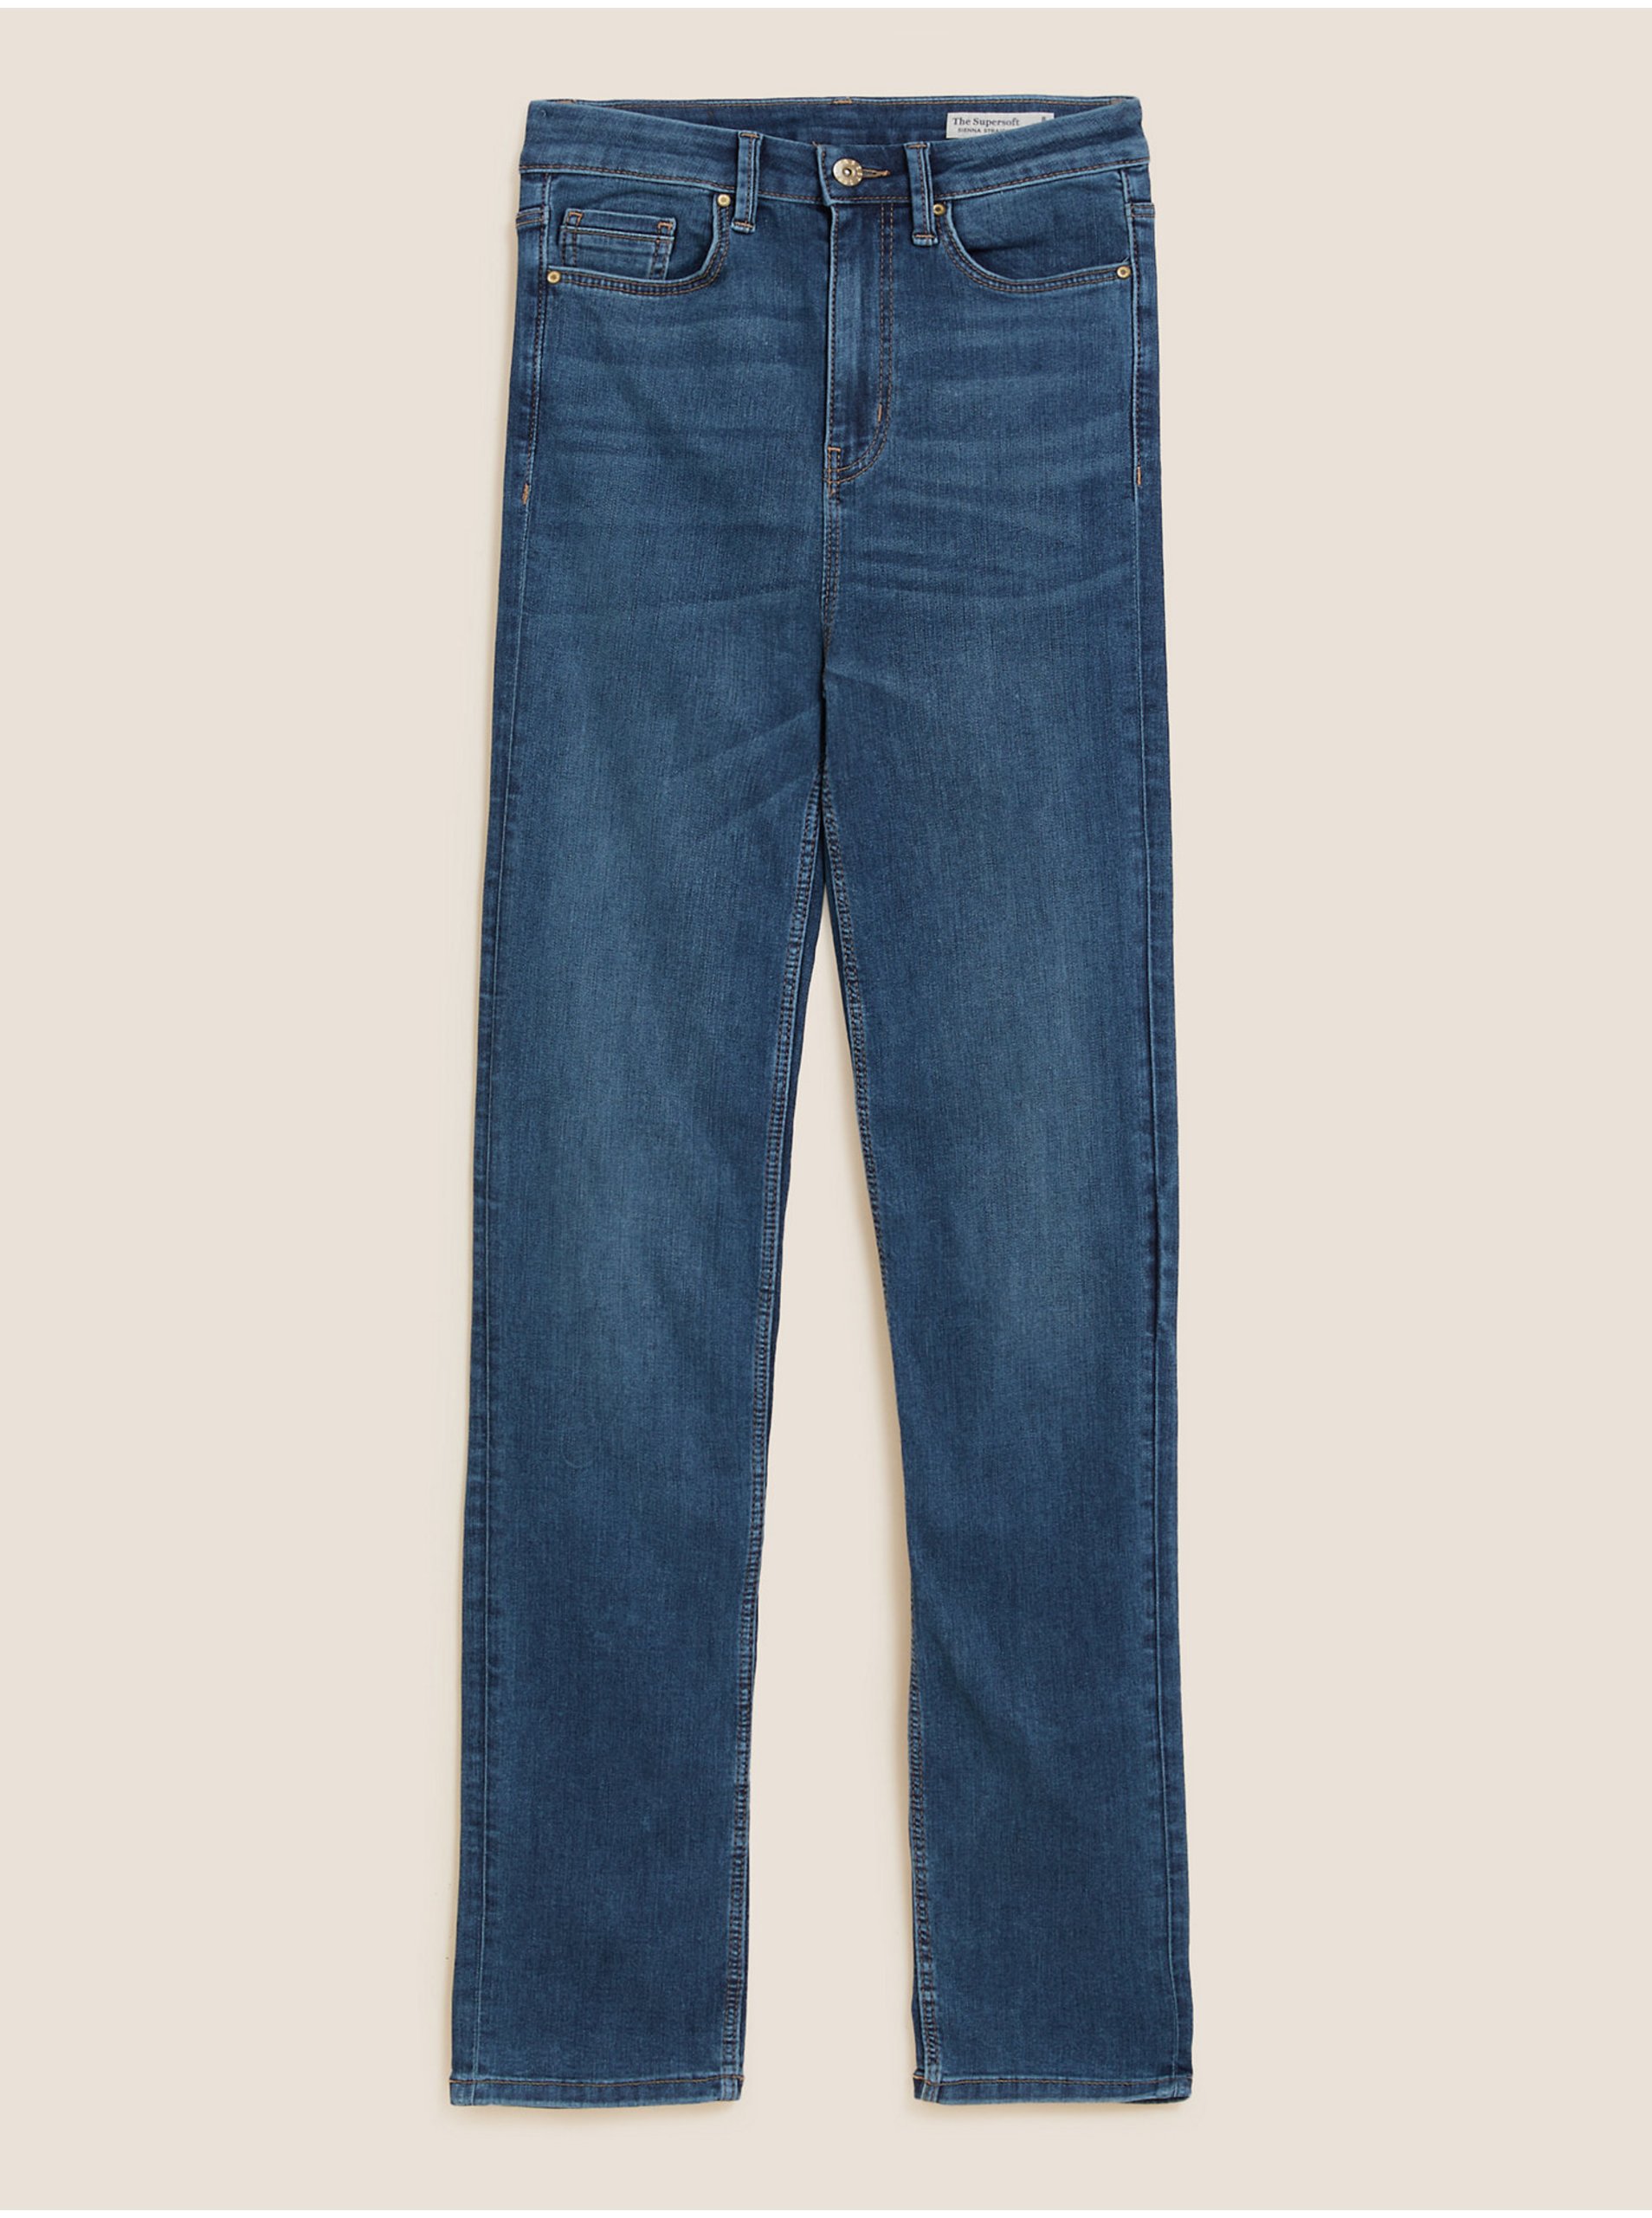 Levně Extra jemné džíny Sienna s rovnými nohavicemi Marks & Spencer námořnická modrá